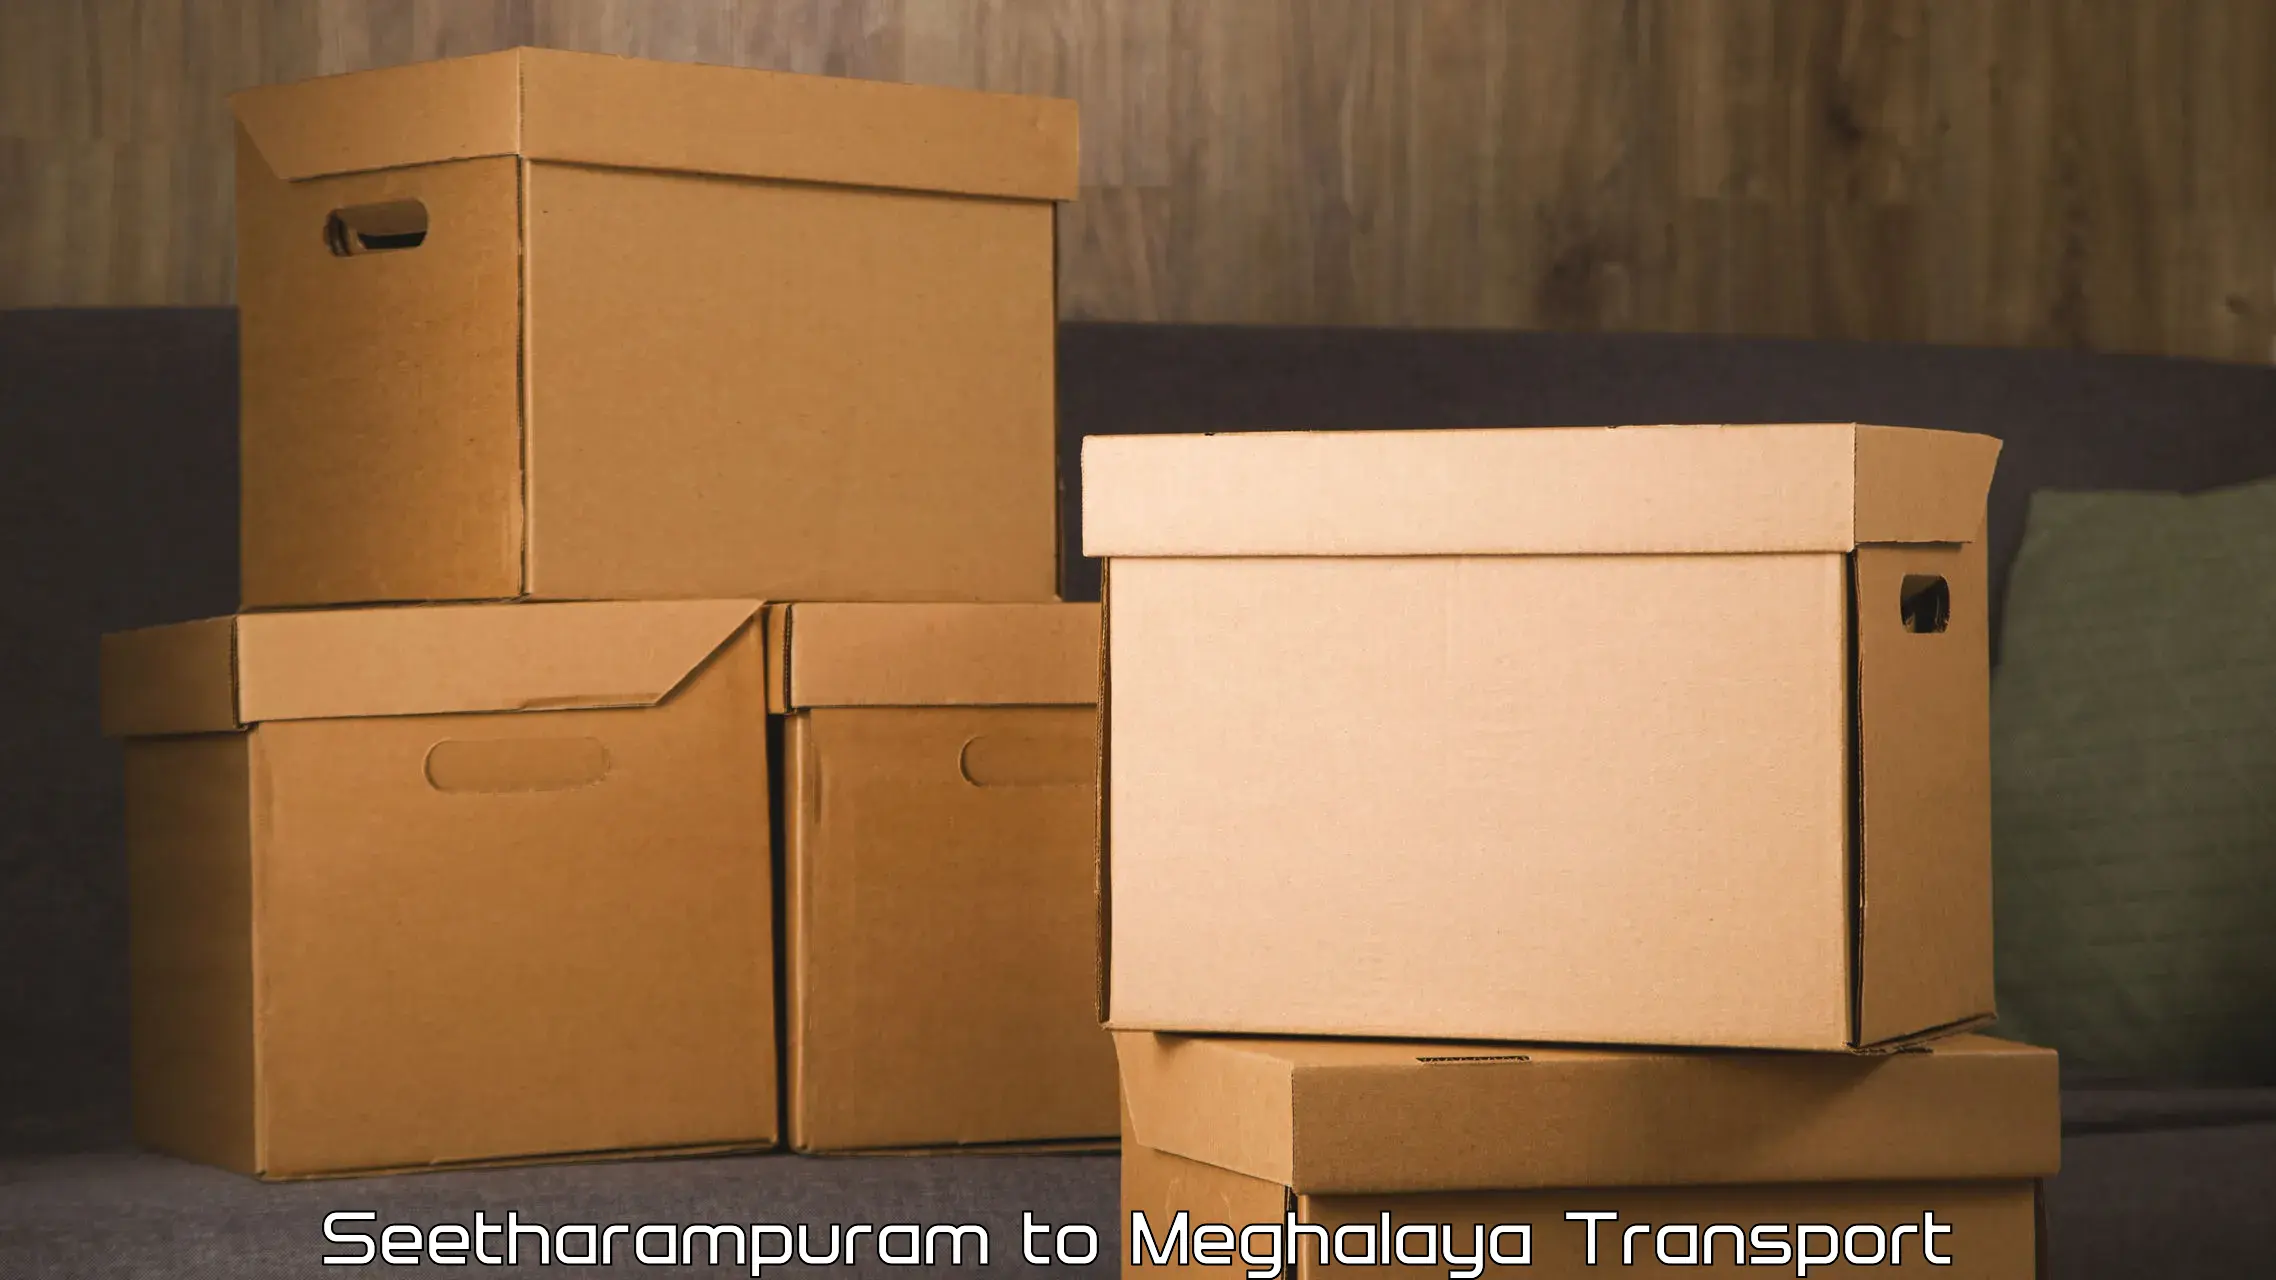 Furniture transport service Seetharampuram to Meghalaya